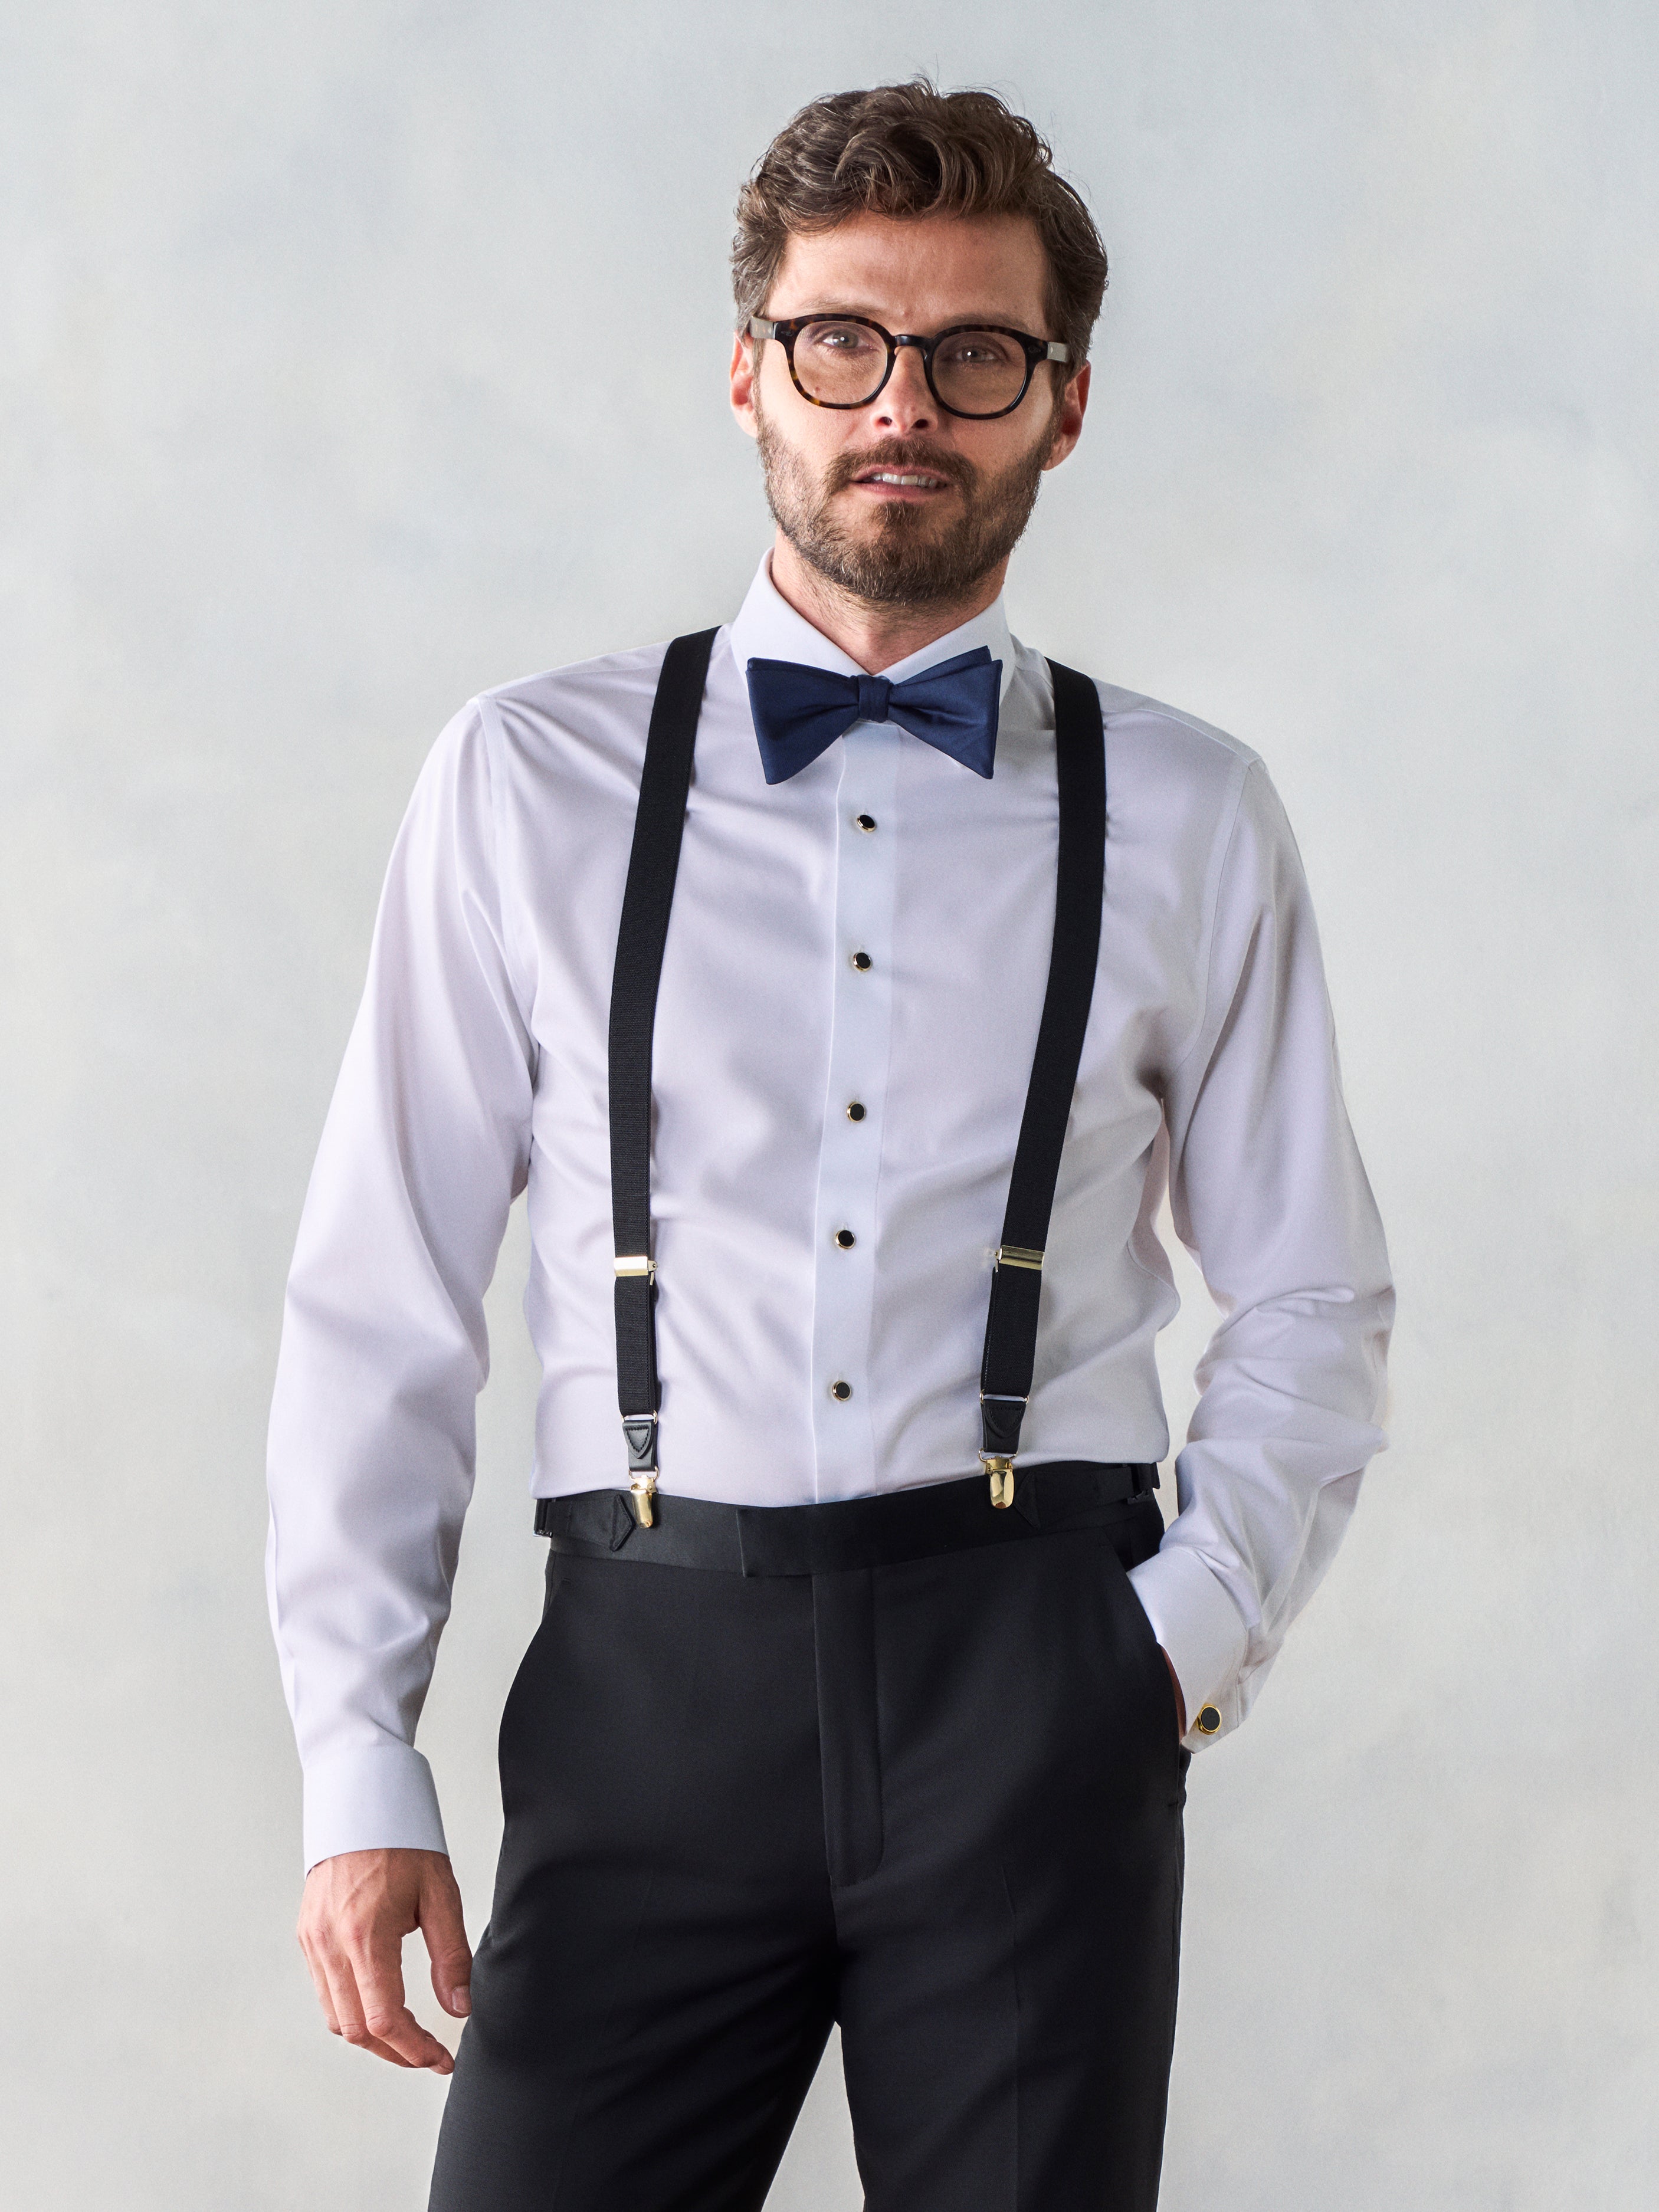 Suspenders | The Black Tux